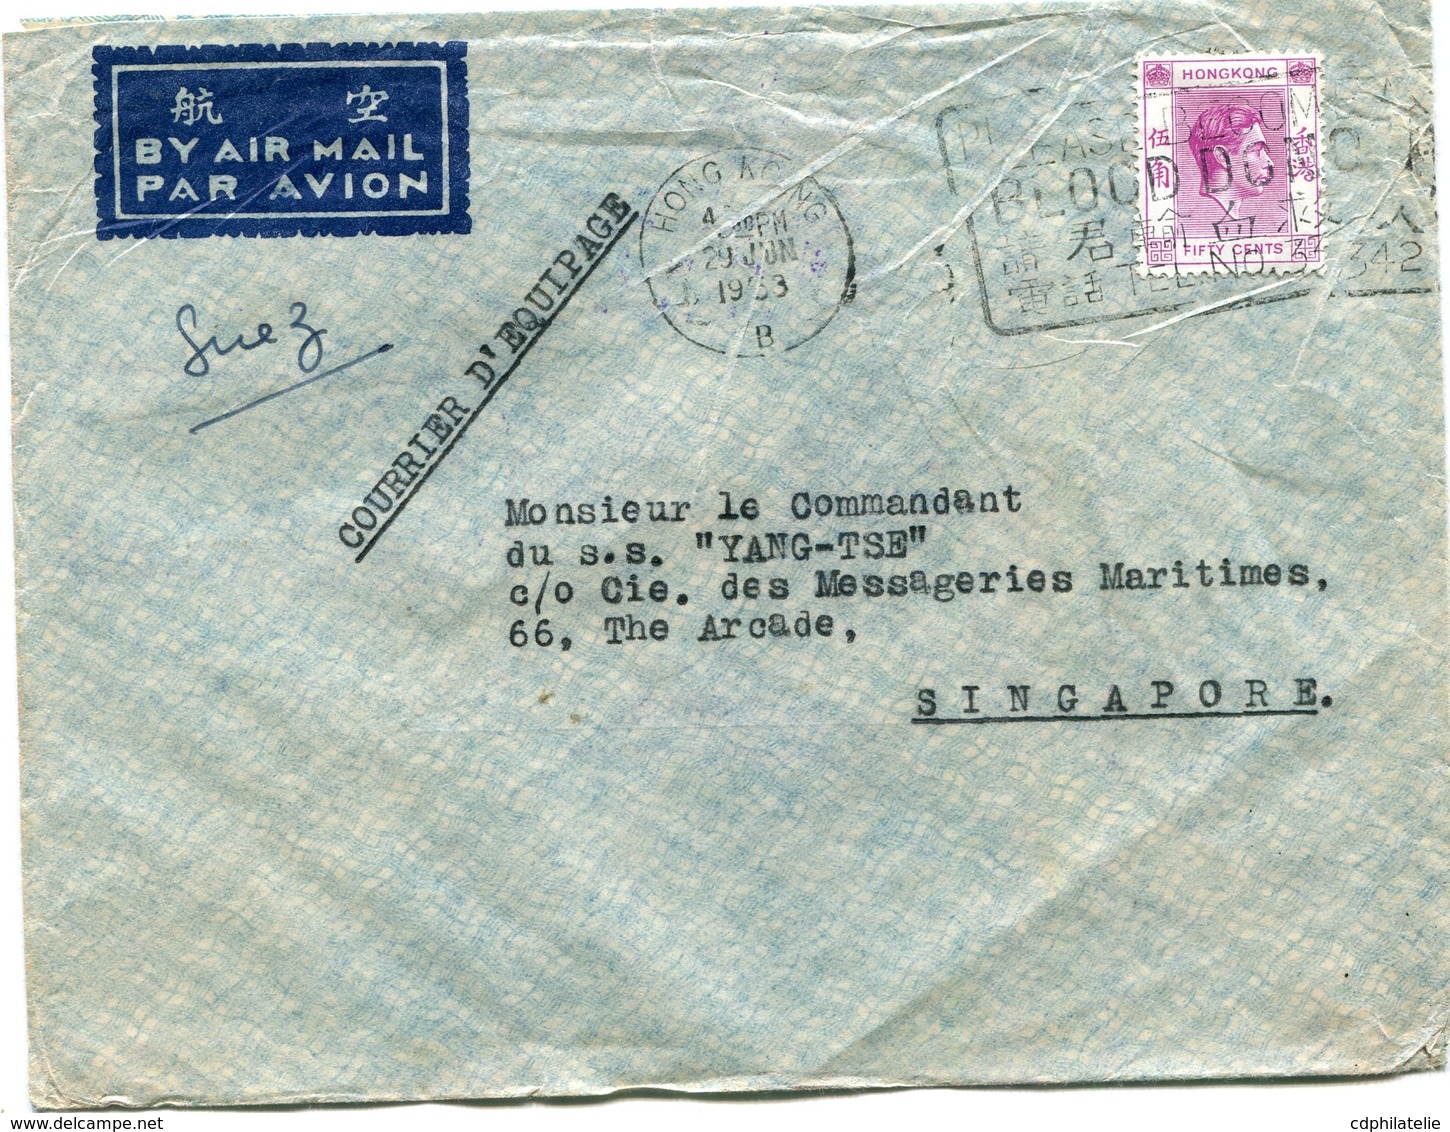 HONG KONG LETTRE PAR AVION DEPART HONG KONG 29 JUN 1953 POUR SINGAPOUR - Storia Postale